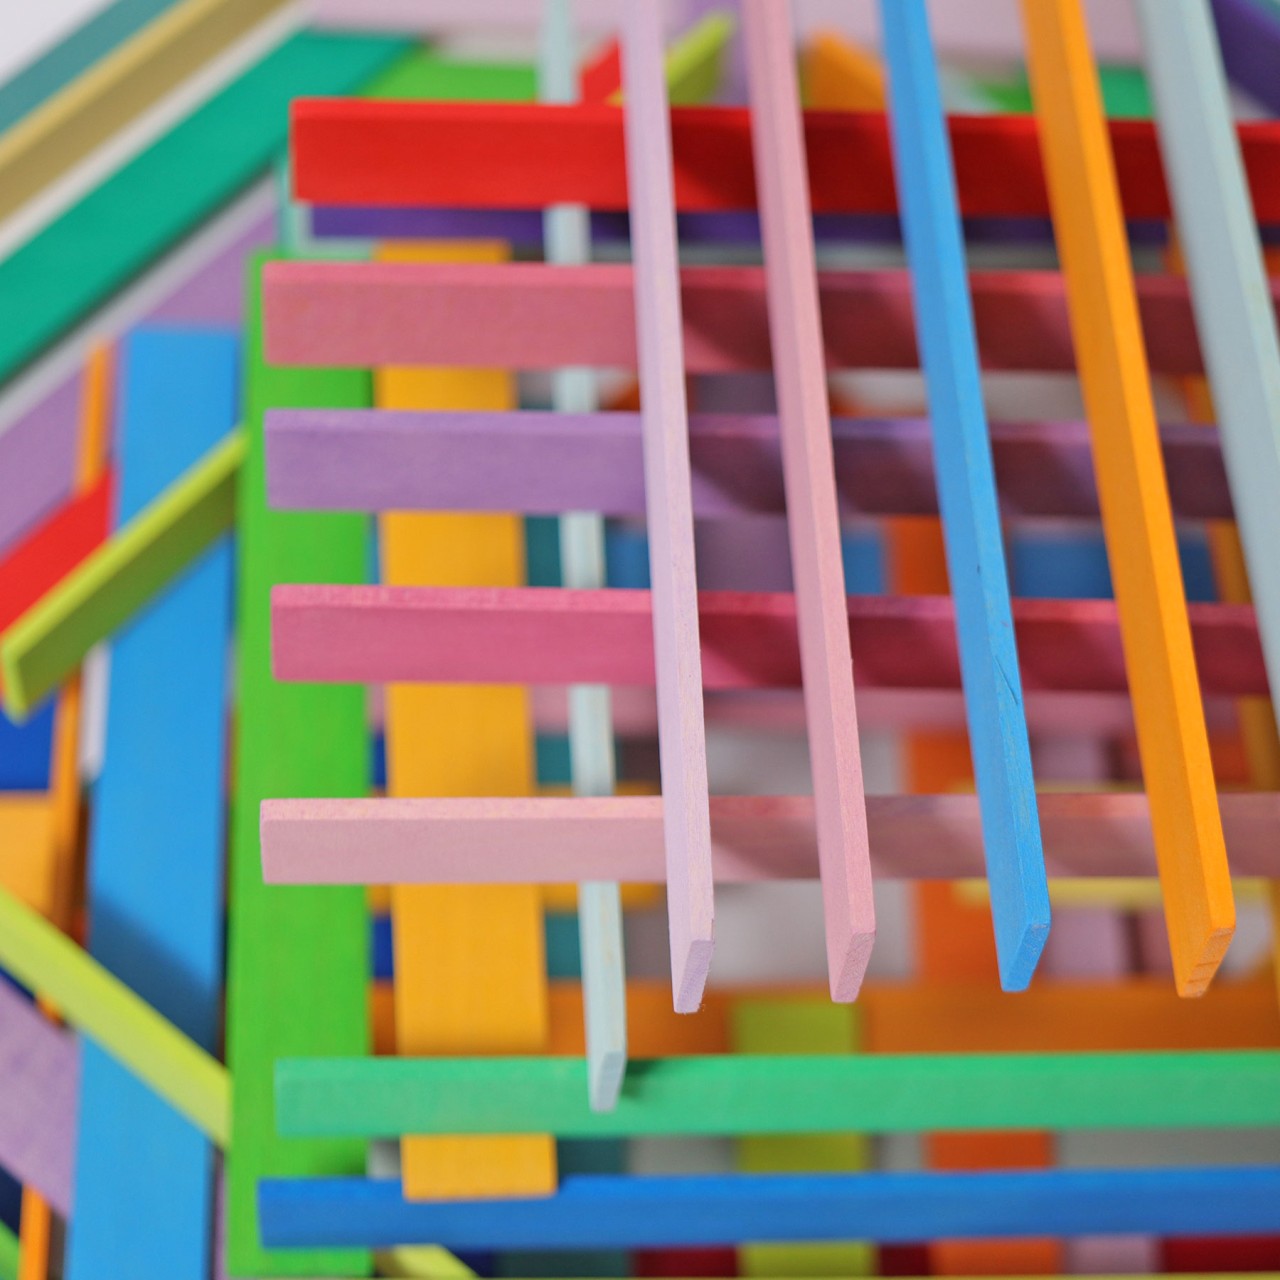 Leonardo Sticks | Building Set | Wooden Toys for Kids | Open-Ended Play